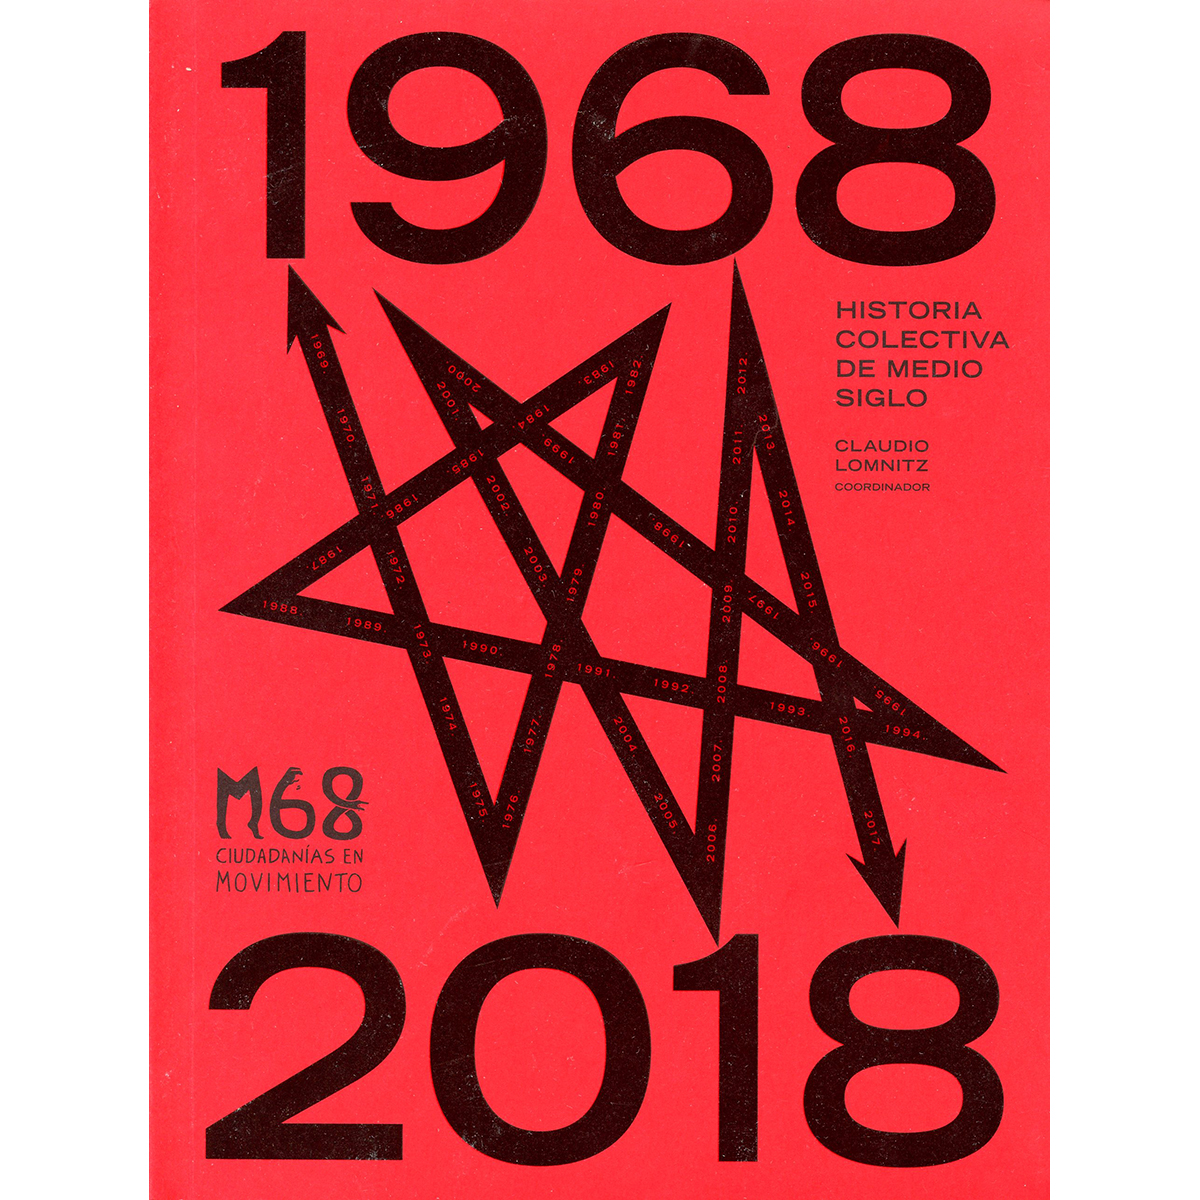 1968-2018: HISTORIA COLECTIVA DE MEDIO SIGLO